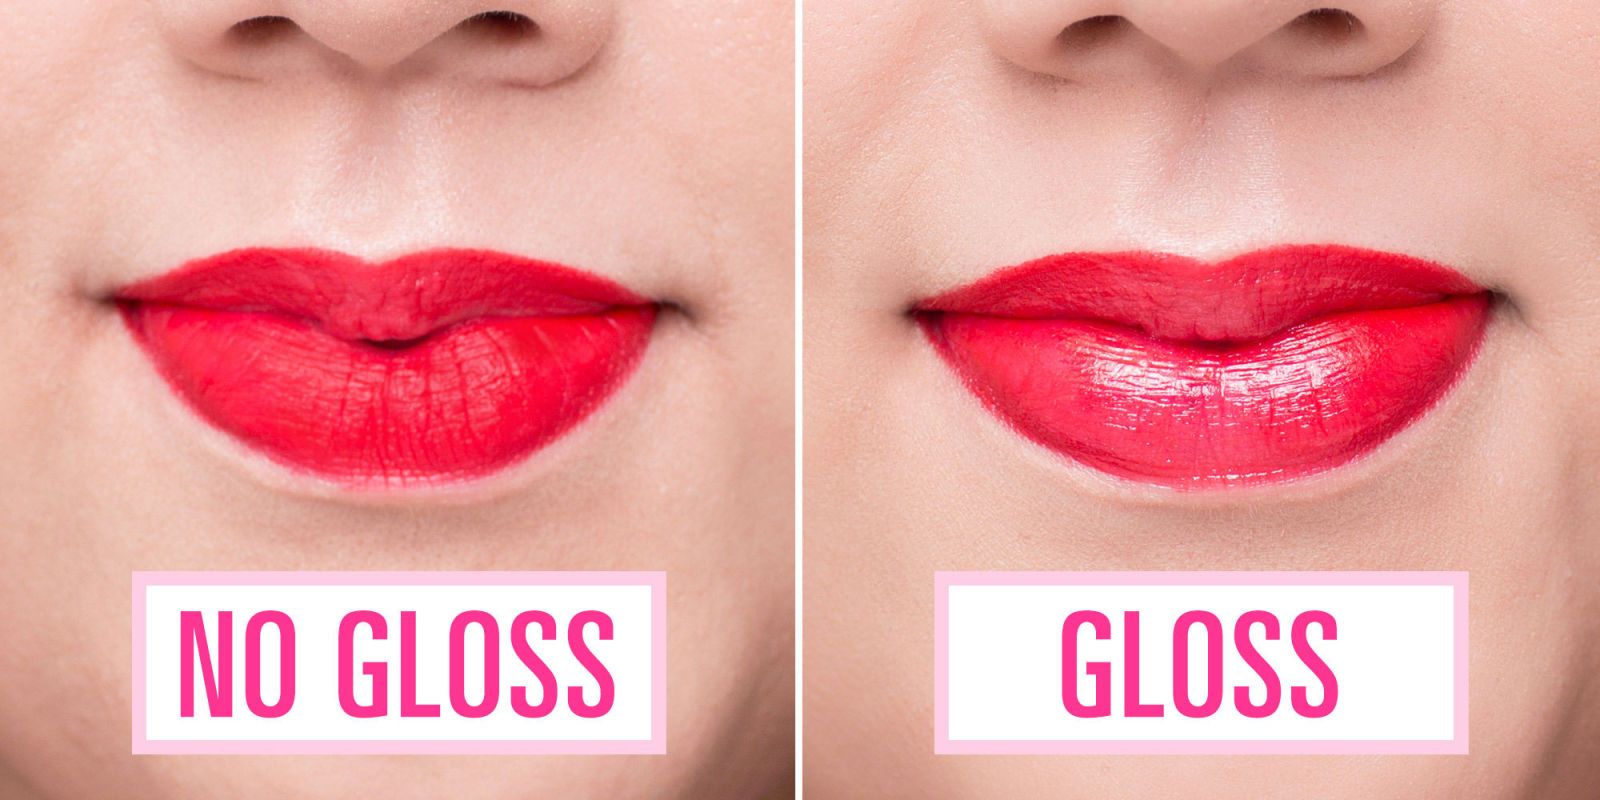 gloss to matte lipstick